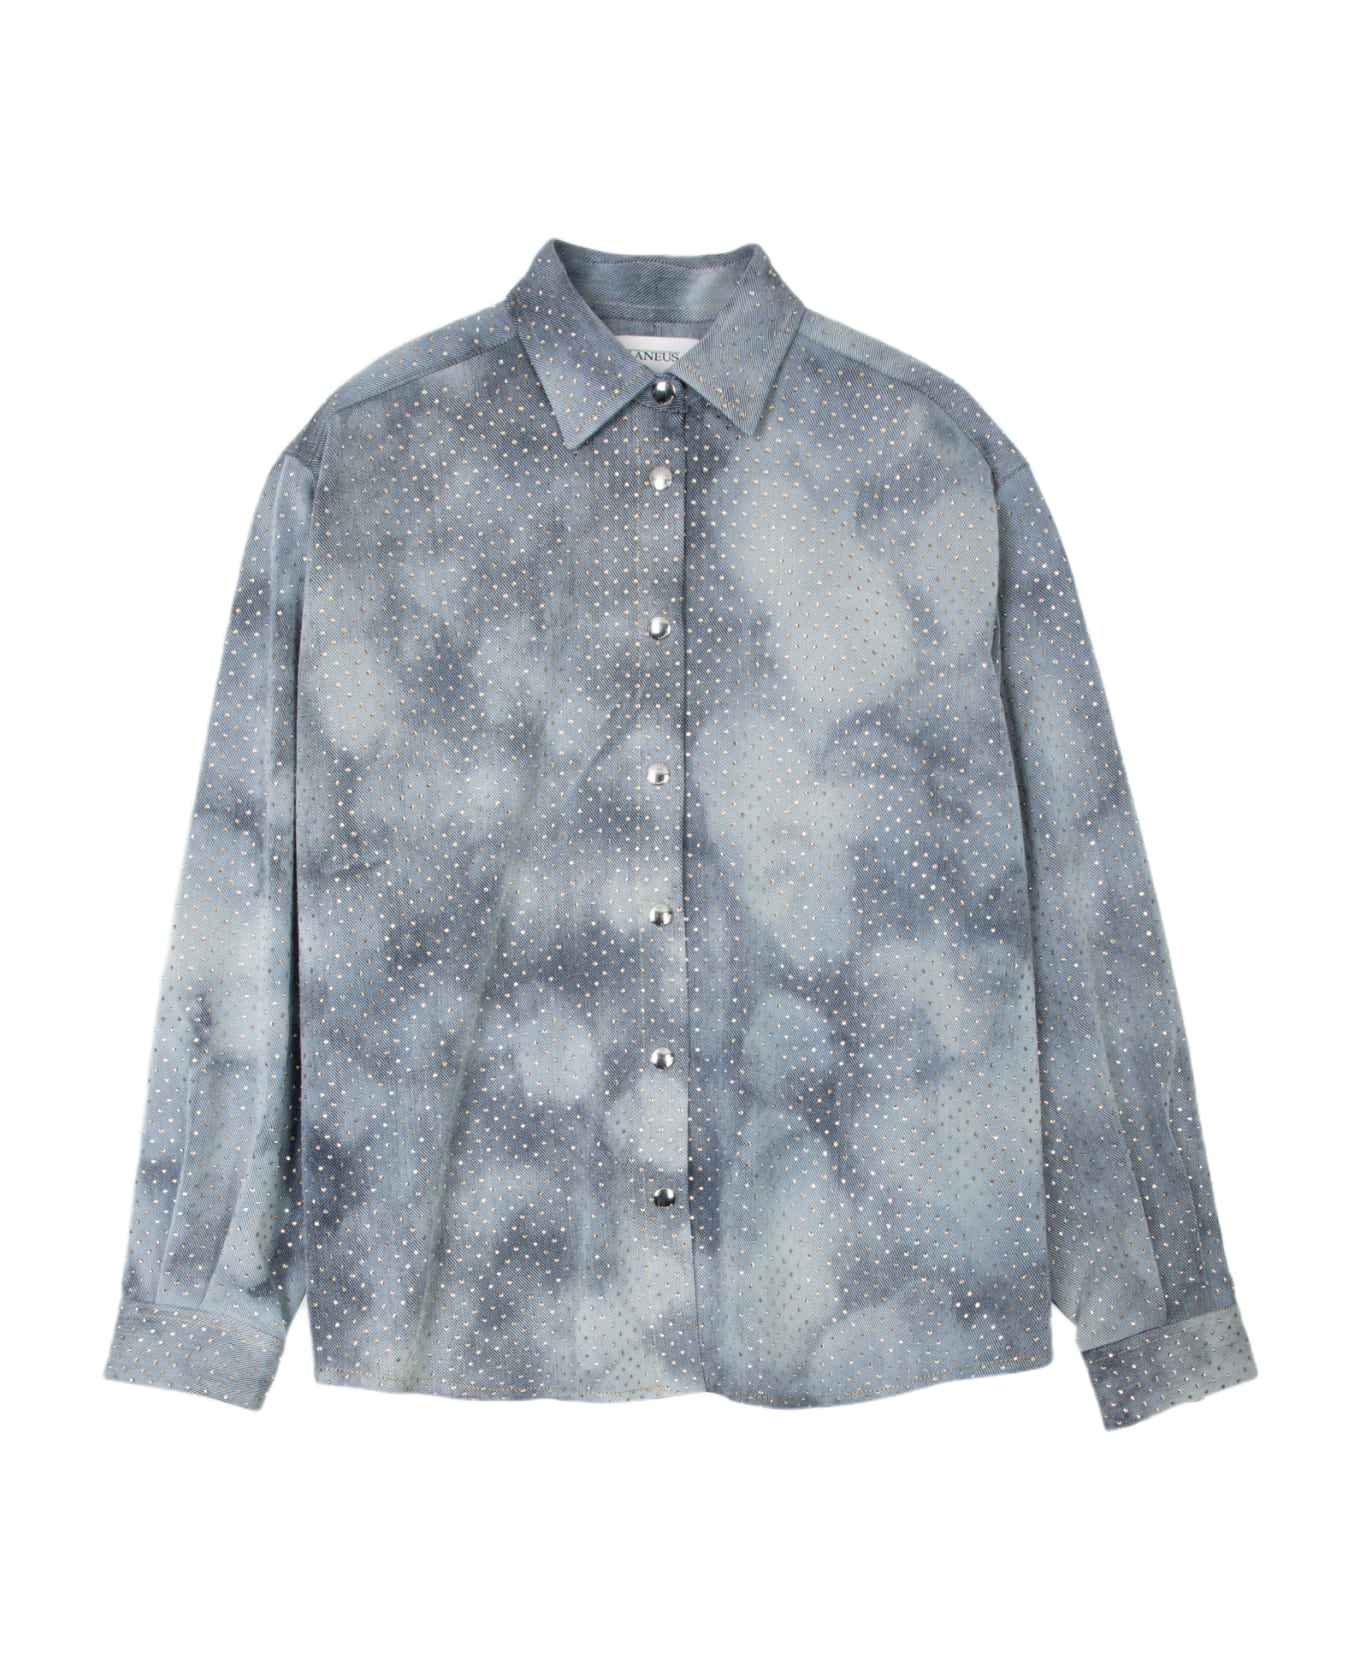 Laneus Denim Strass Shirt Woman Light Blue Denim Shirt With Crystals - Denim Strass Shirt - DENIM BLU シャツ